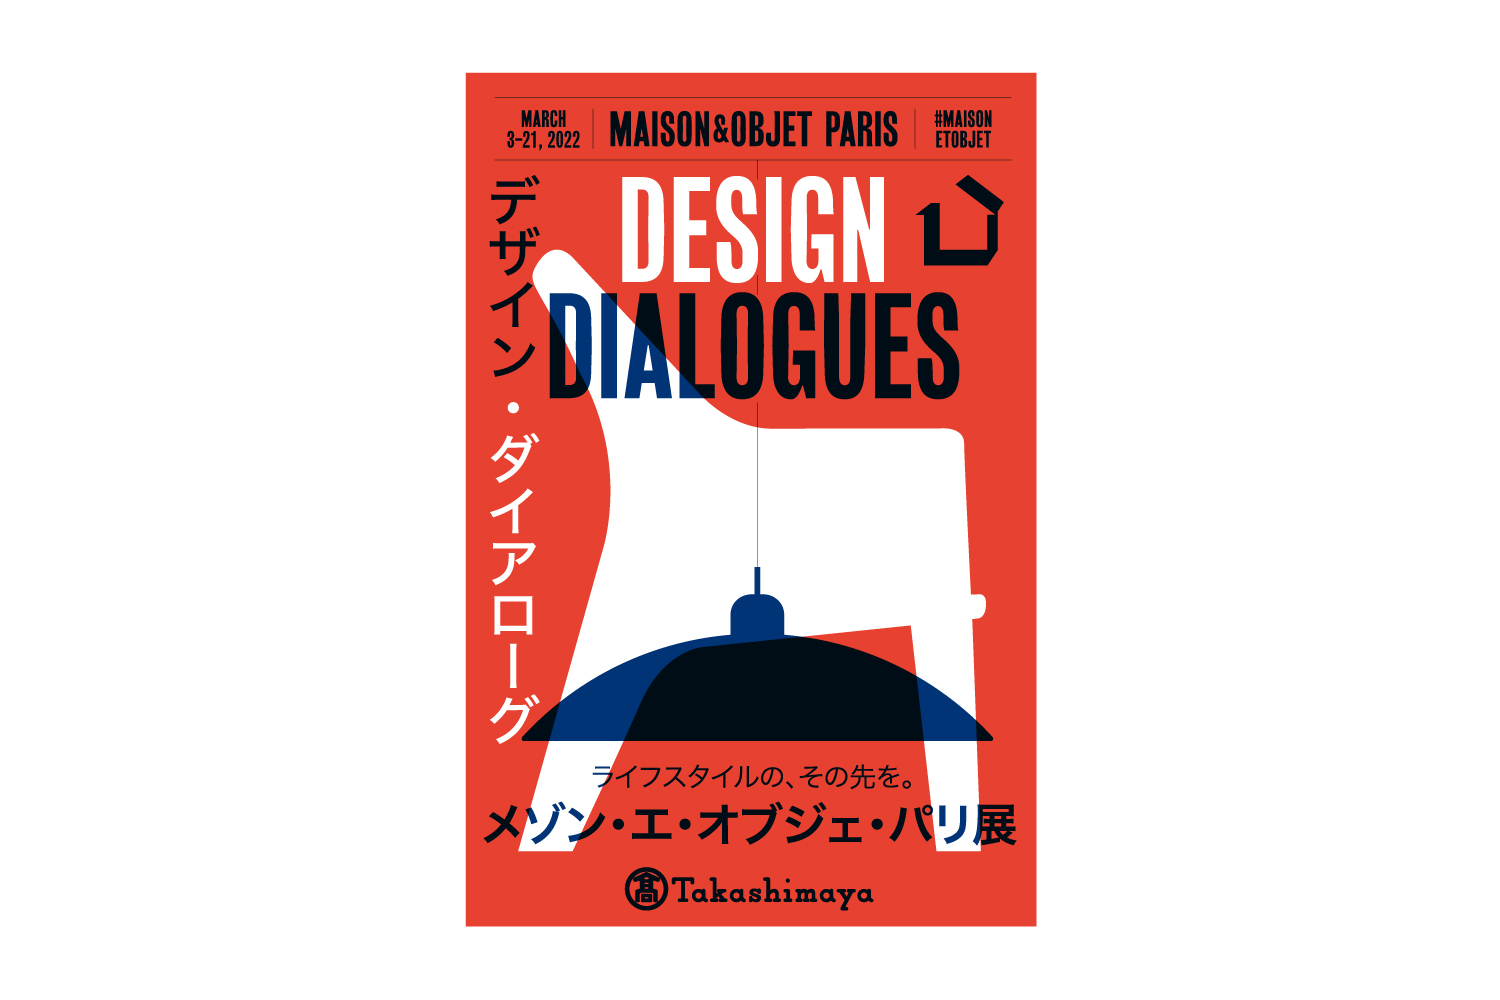 【2022.3.9-15】 日本橋高島屋『メゾン・エ・オブジェ・パリ展』記念特別企画 出展のお知らせ